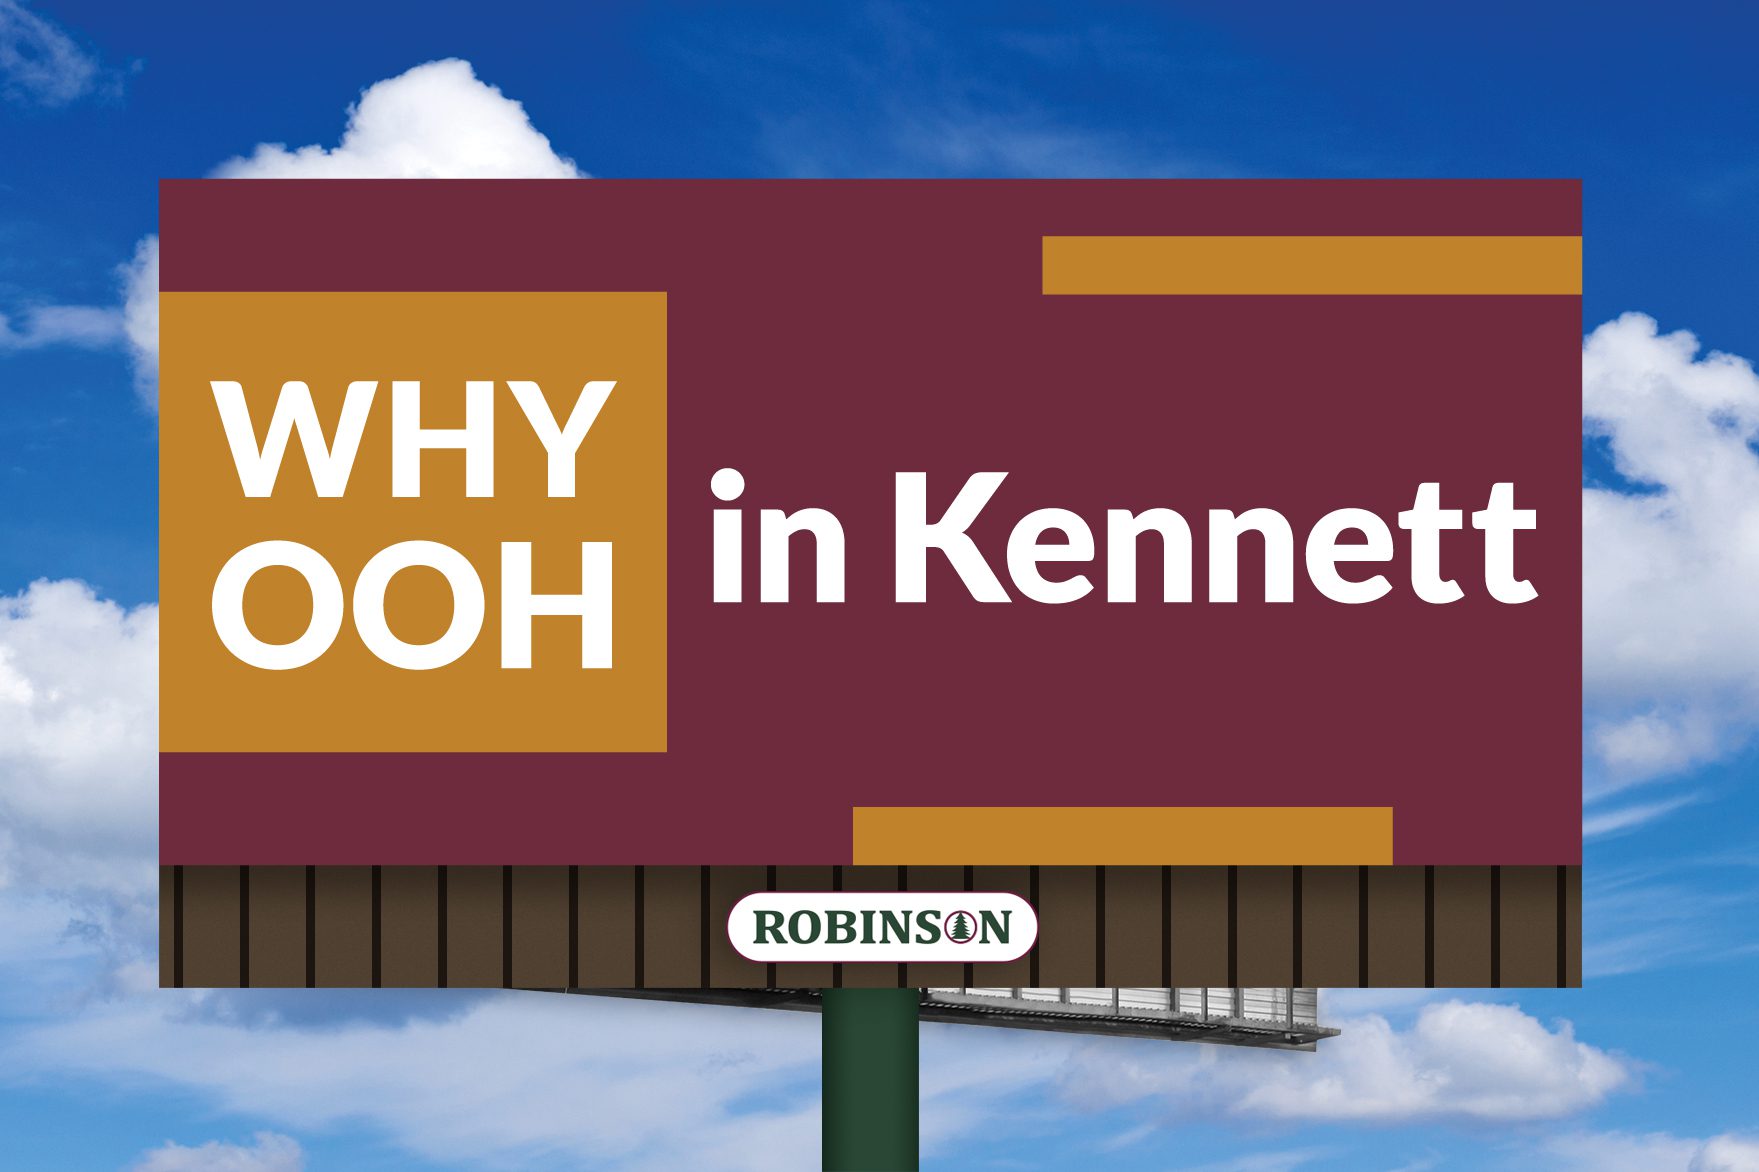 Kennett, Missouri digital billboard advertising